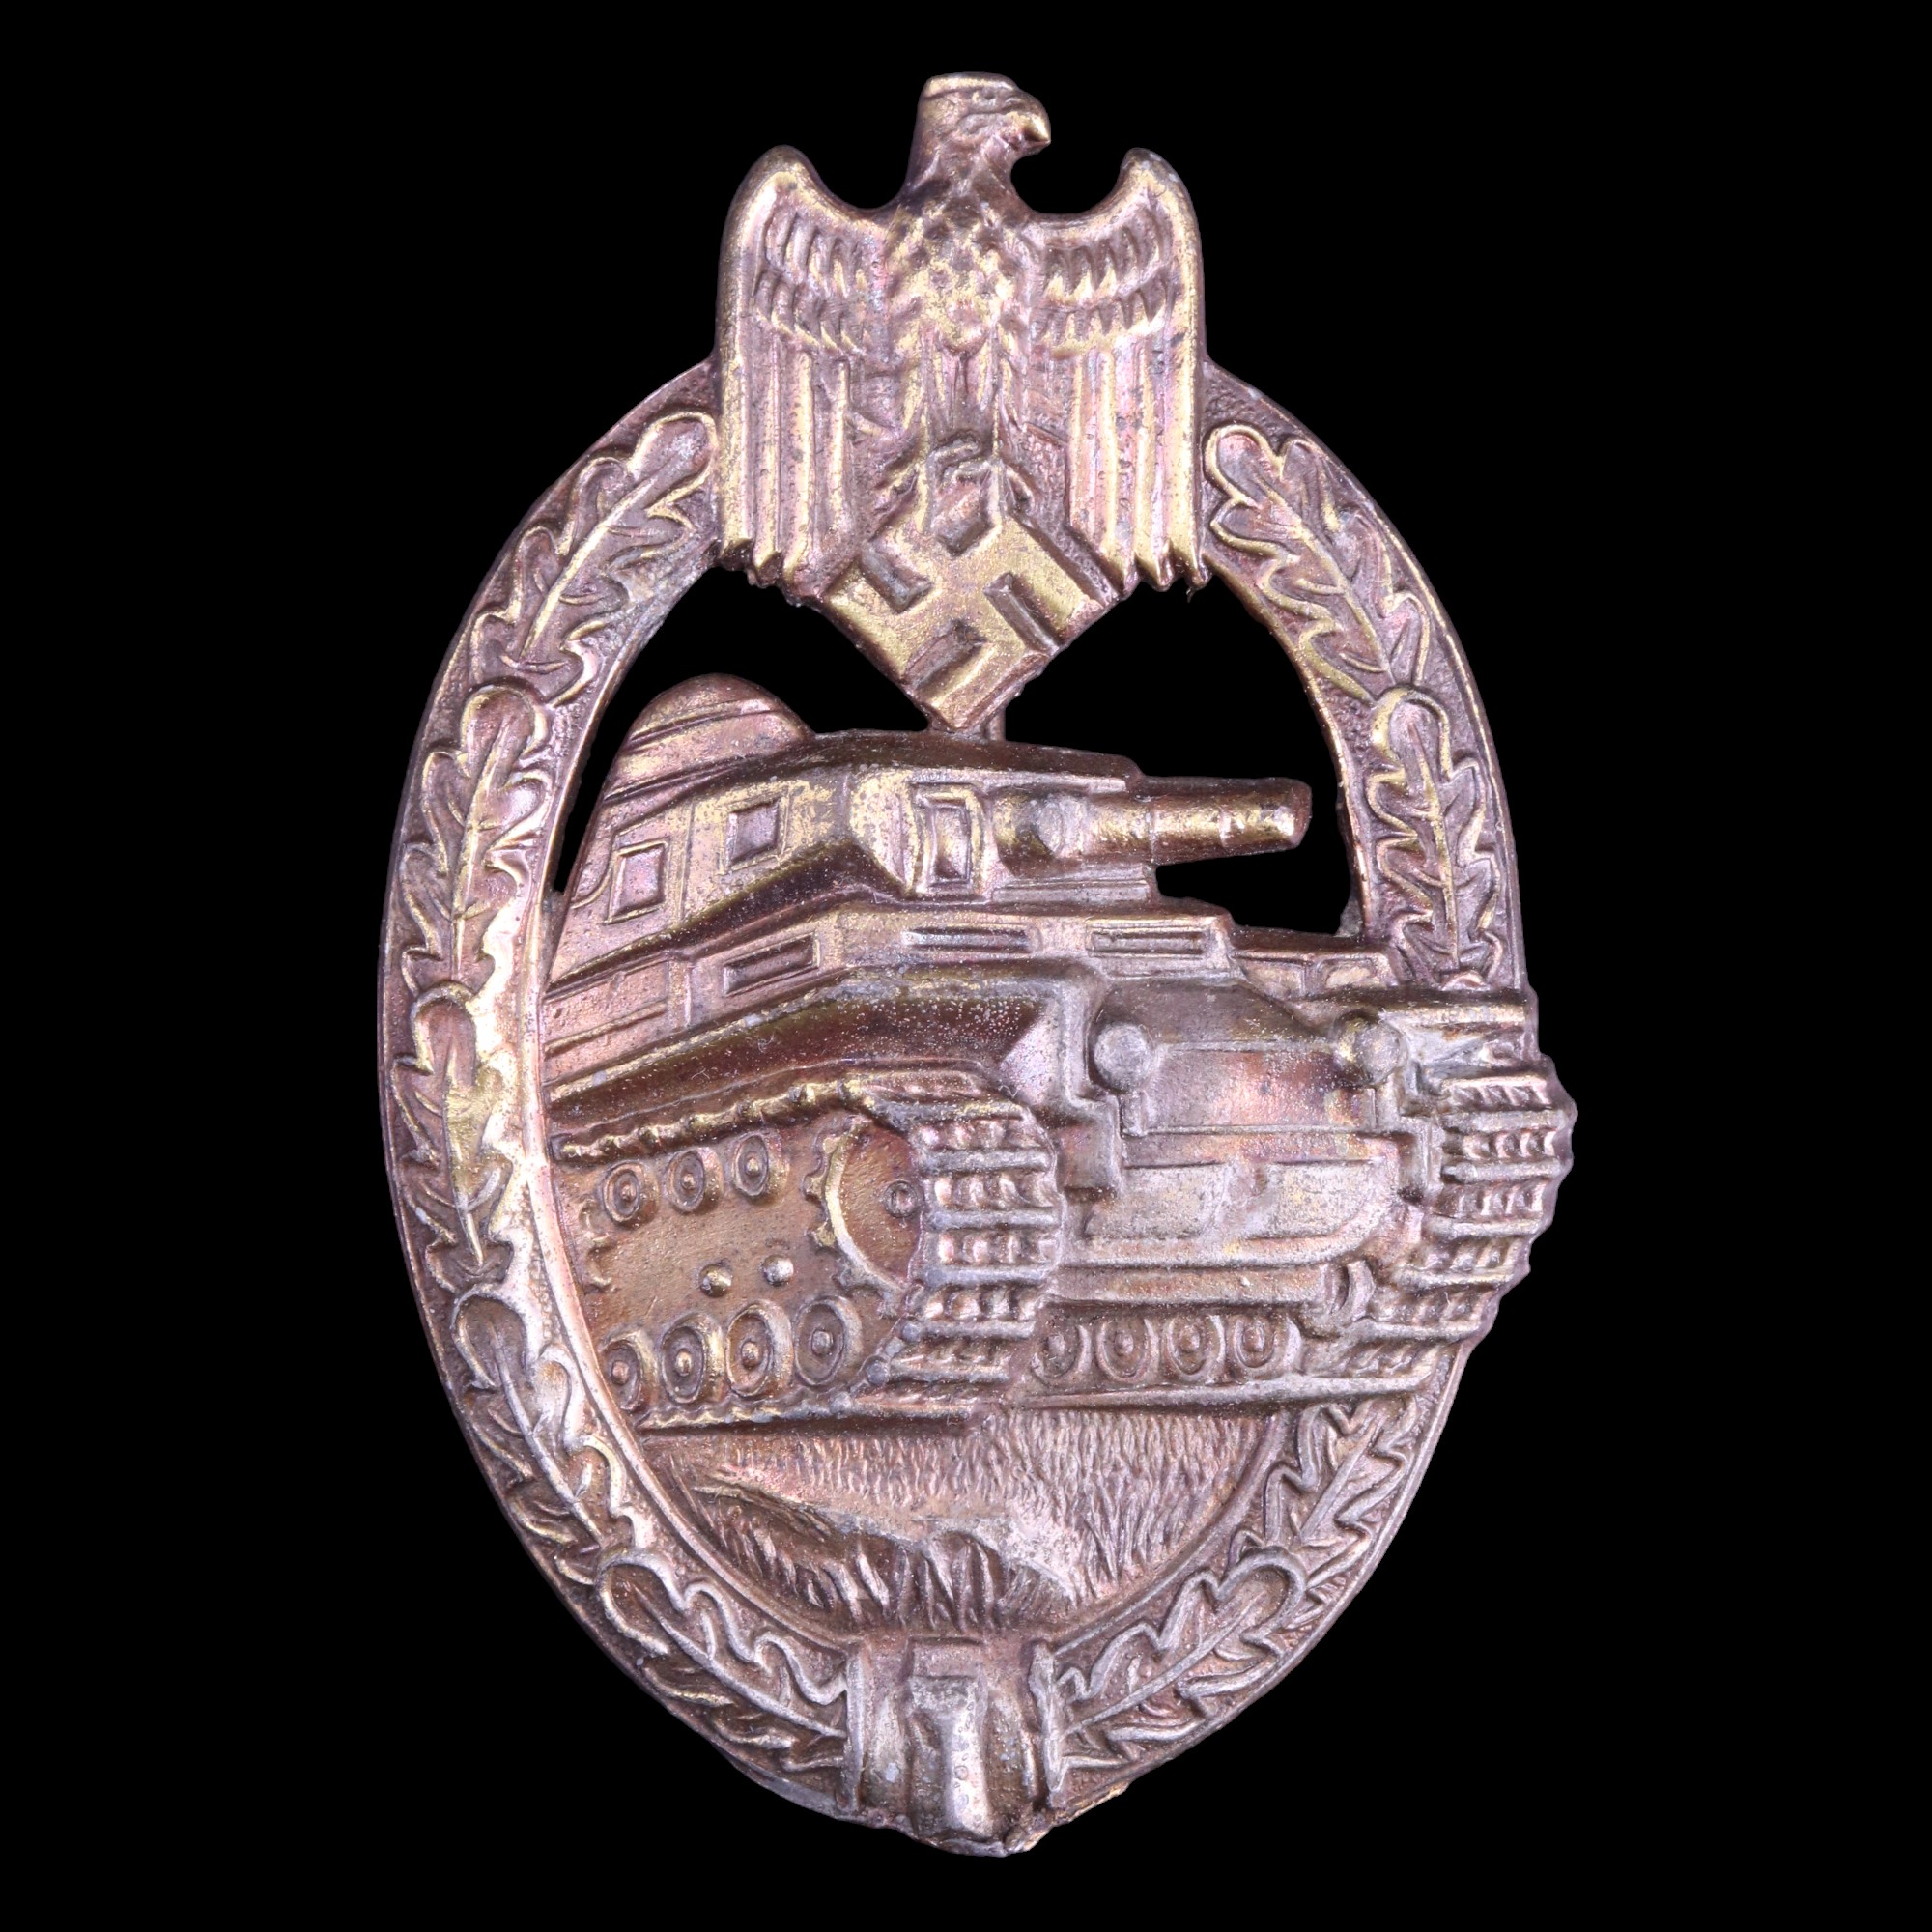 A German Third Reich Panzer War Badge in bronze, by Richard Karneth